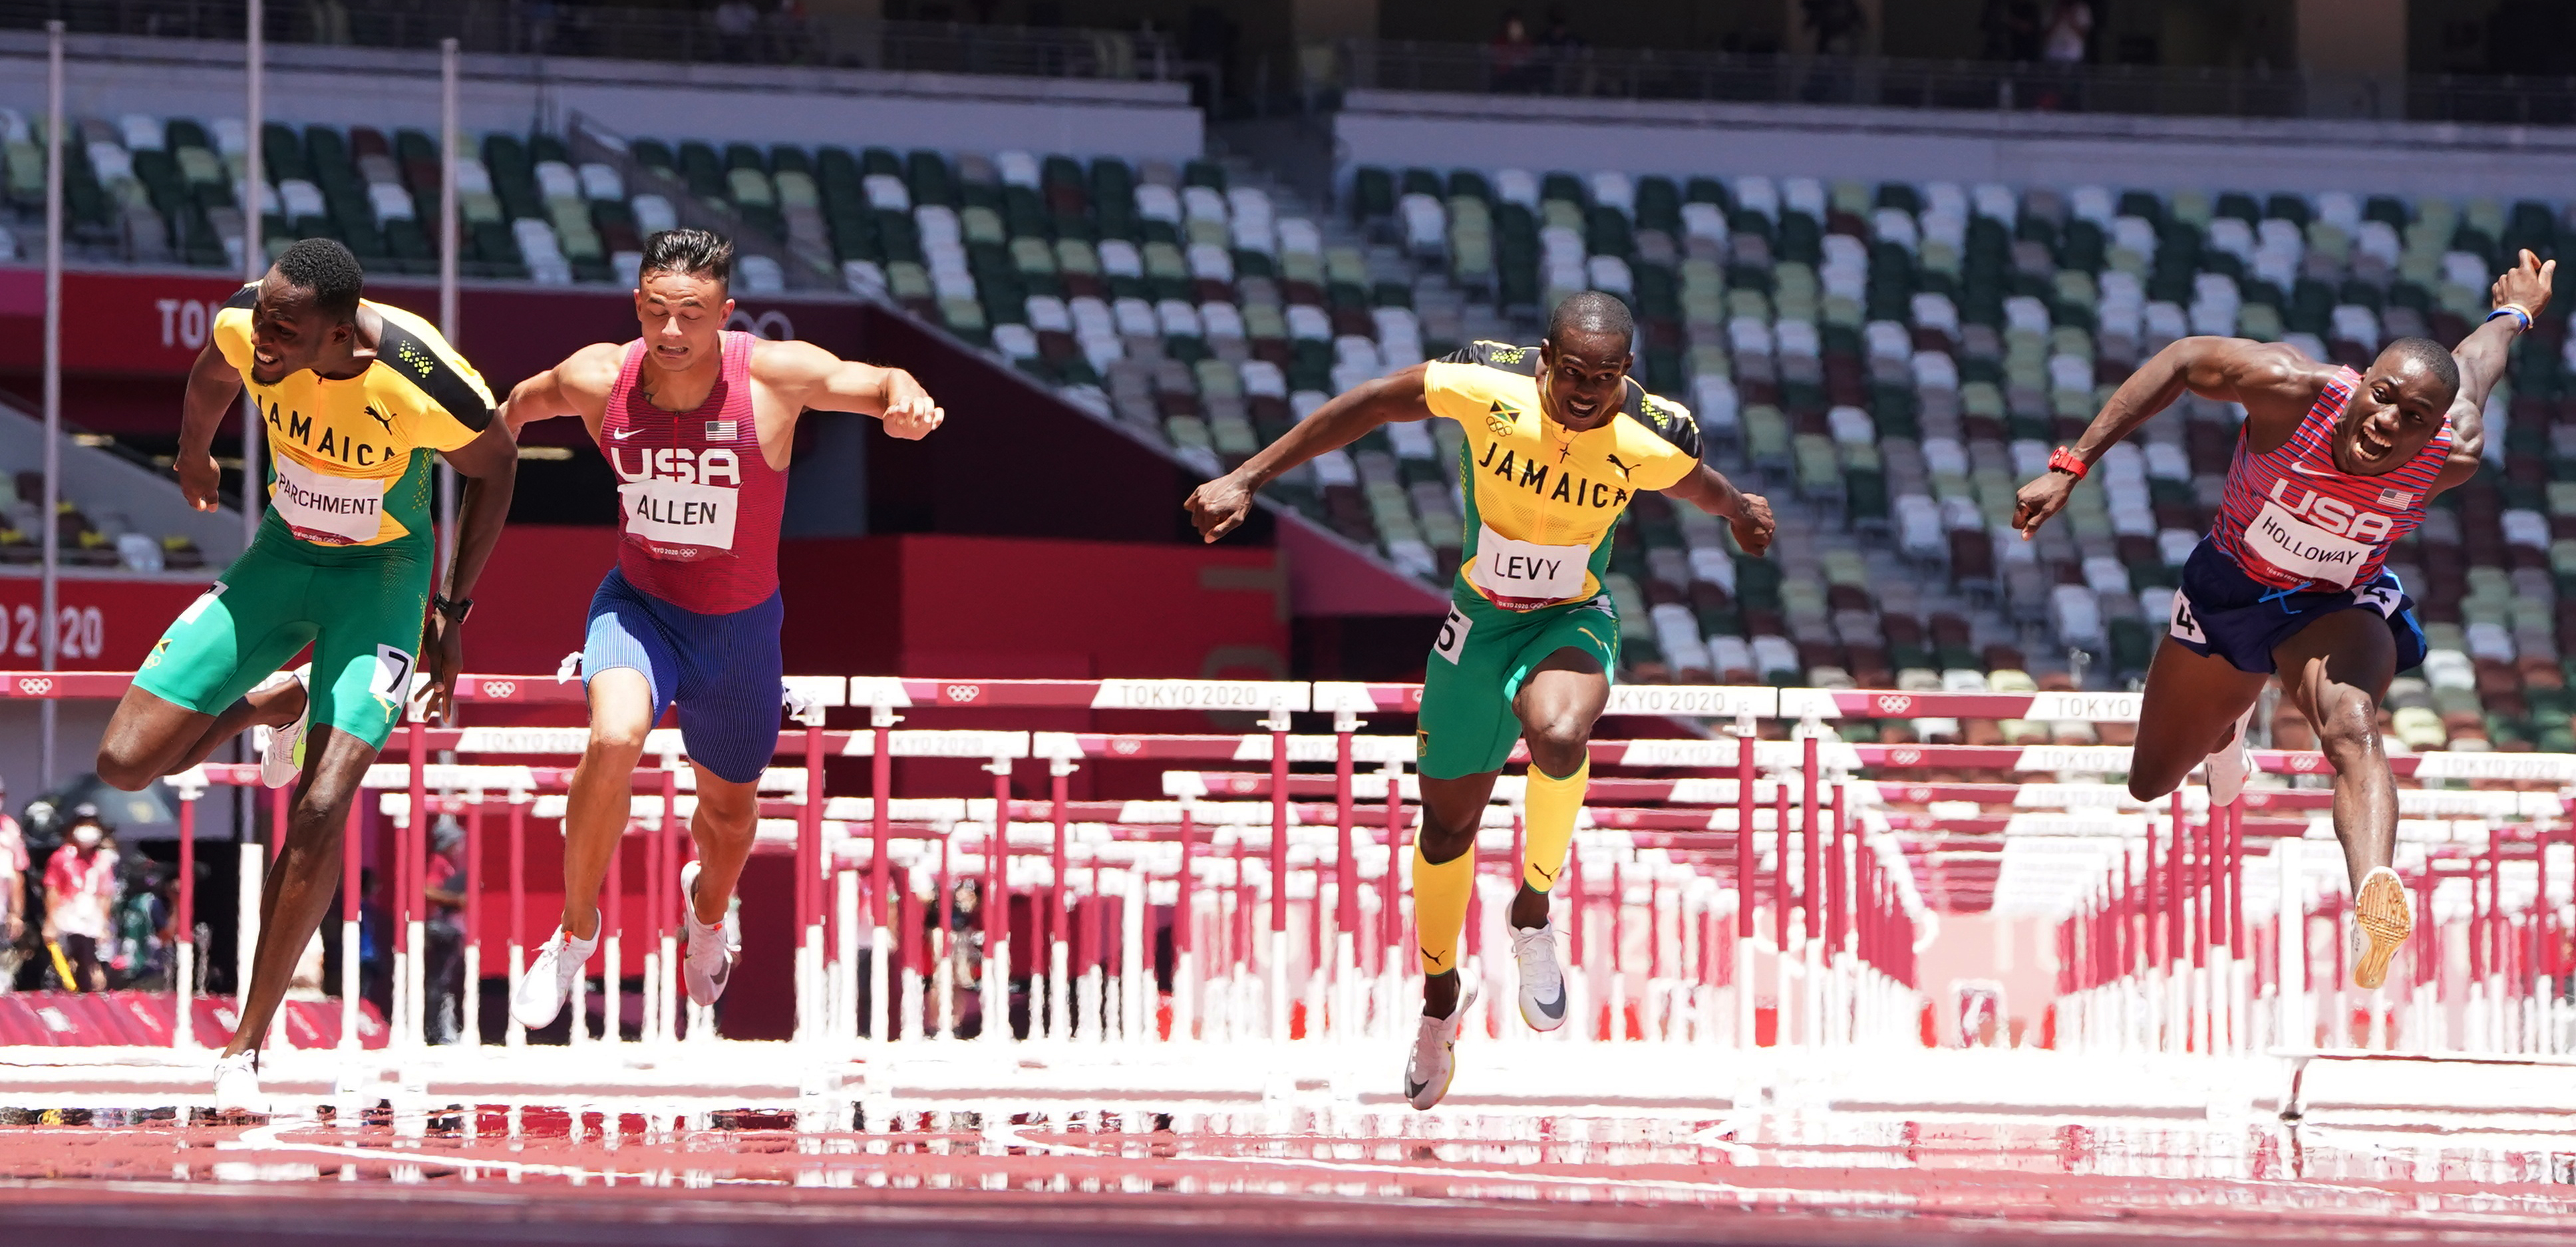 Los atletas: Hansle Parchment y Ronald Levy de Jamaica y Devon Allen de los Estados Unidos en los 110 metros con vallas en atletismo.